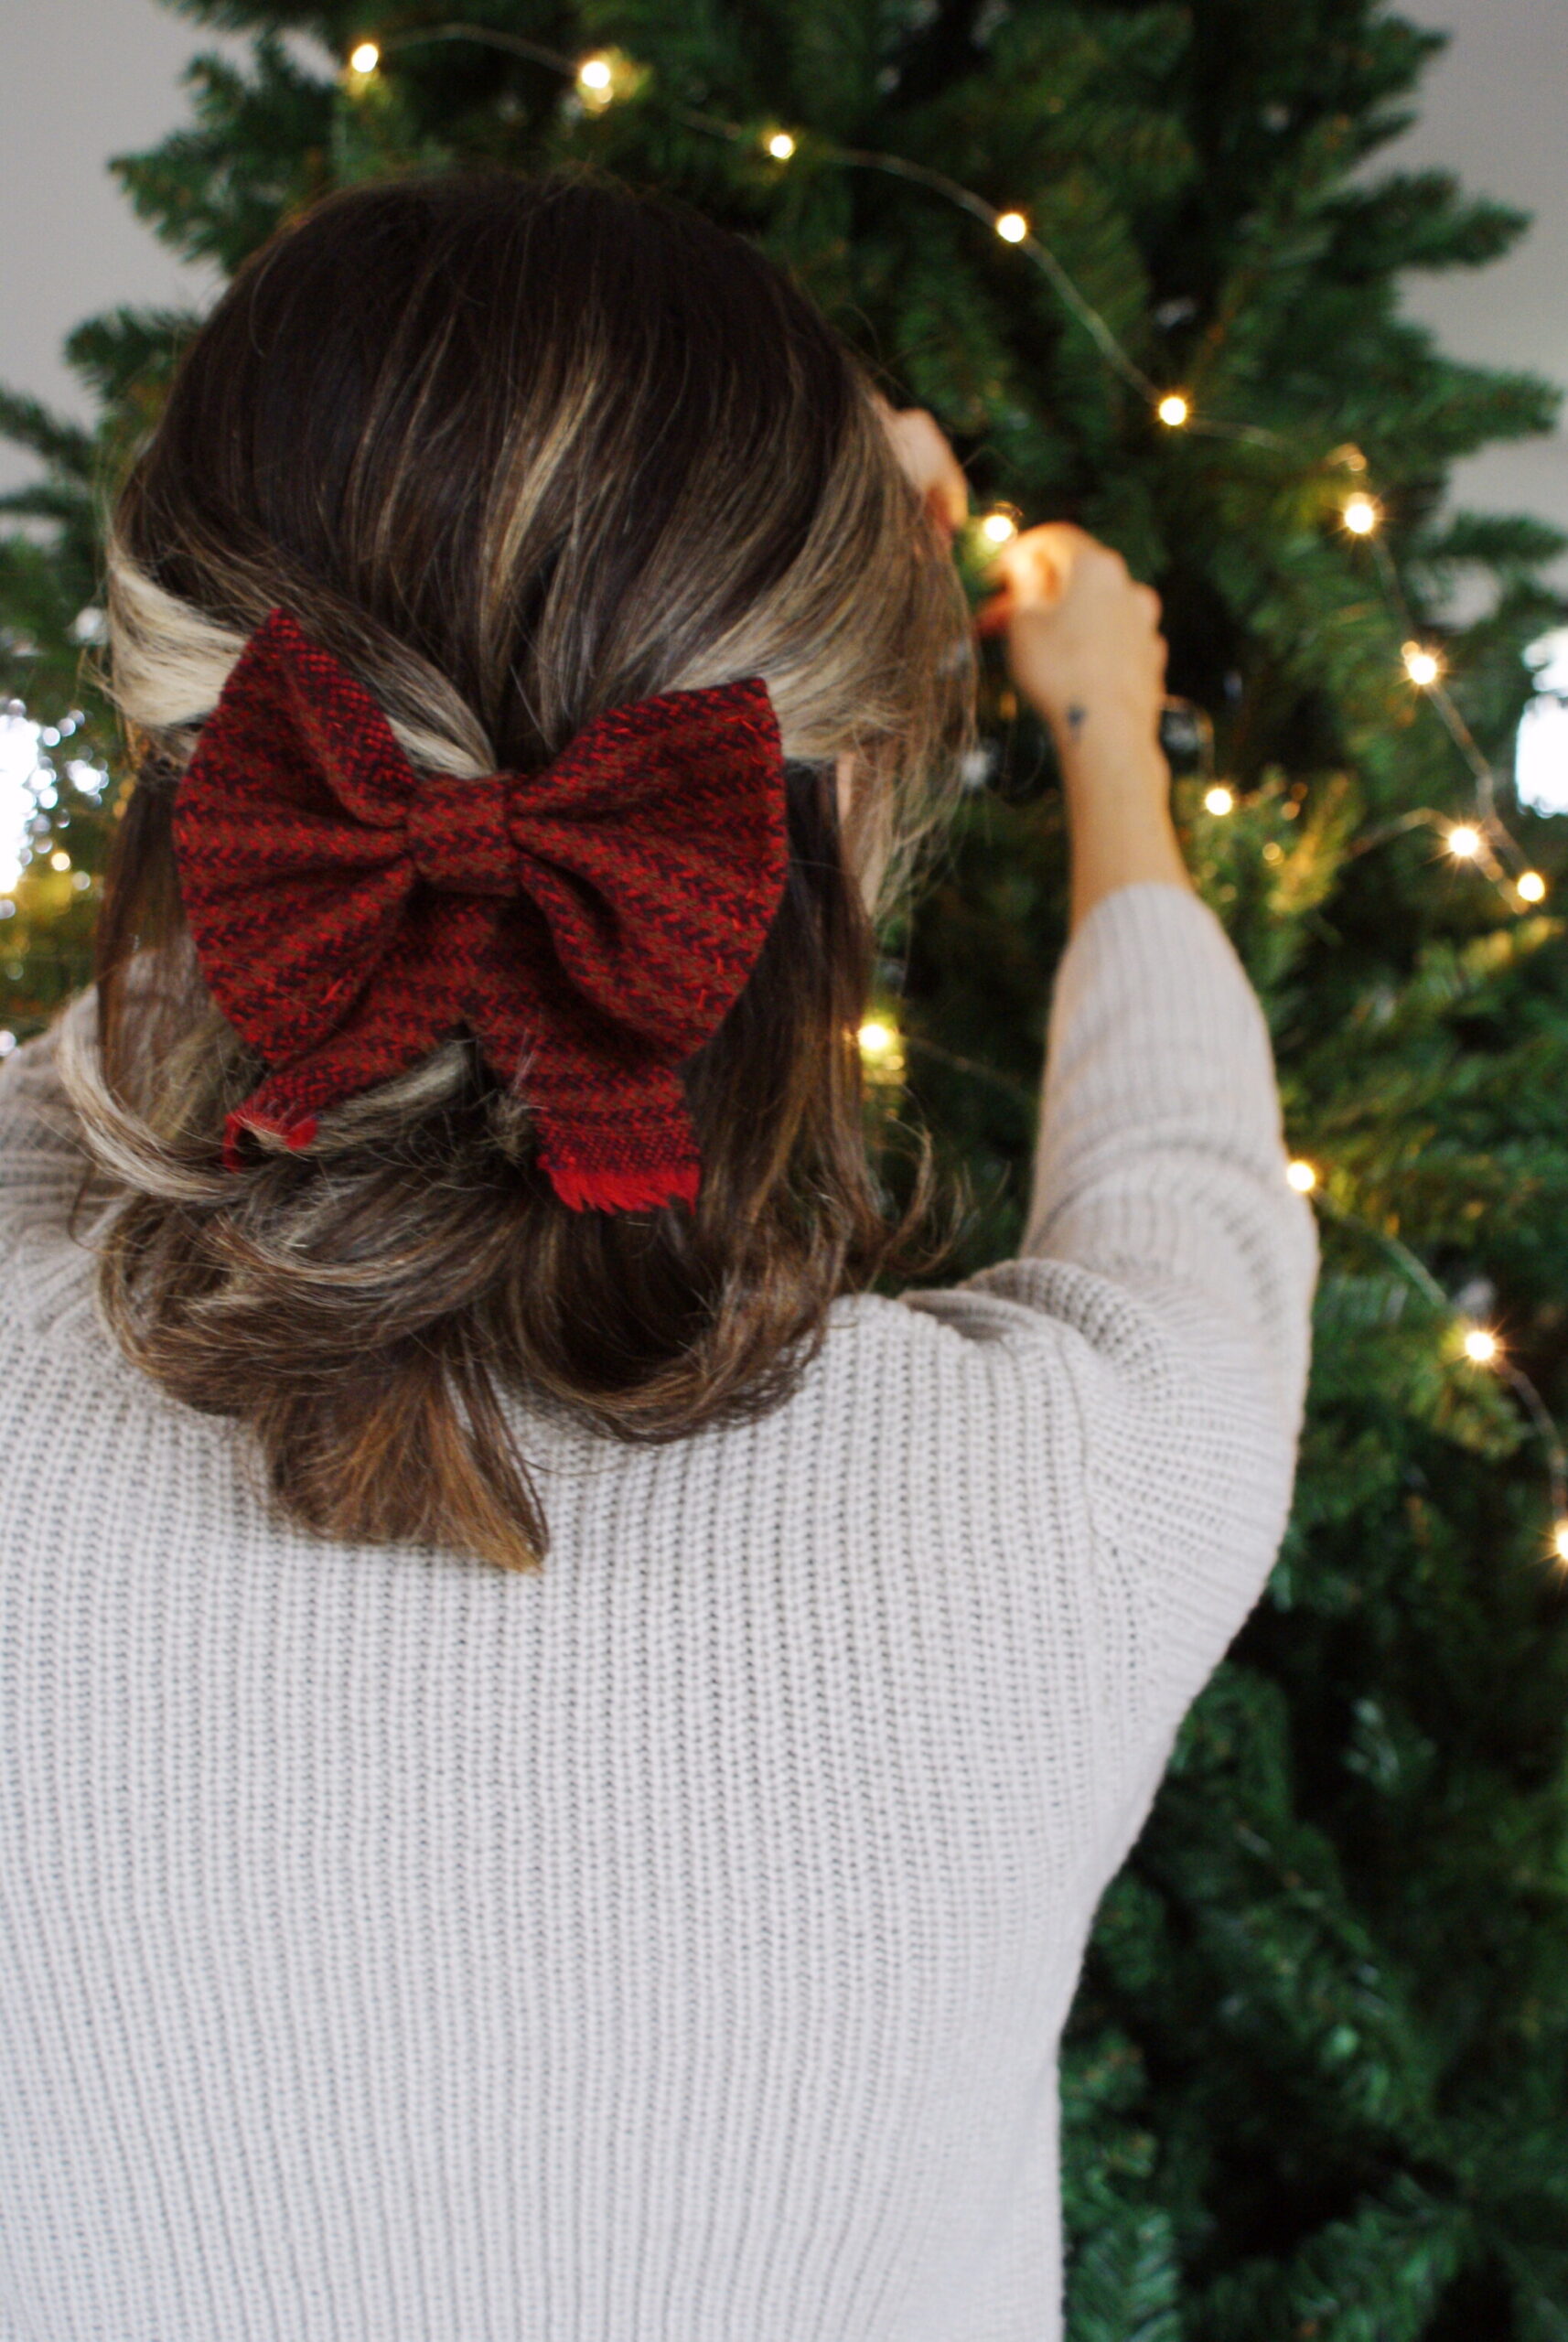 diy tartan bow hair clip easy handmade accessory festive outfits christmas tutorial sew